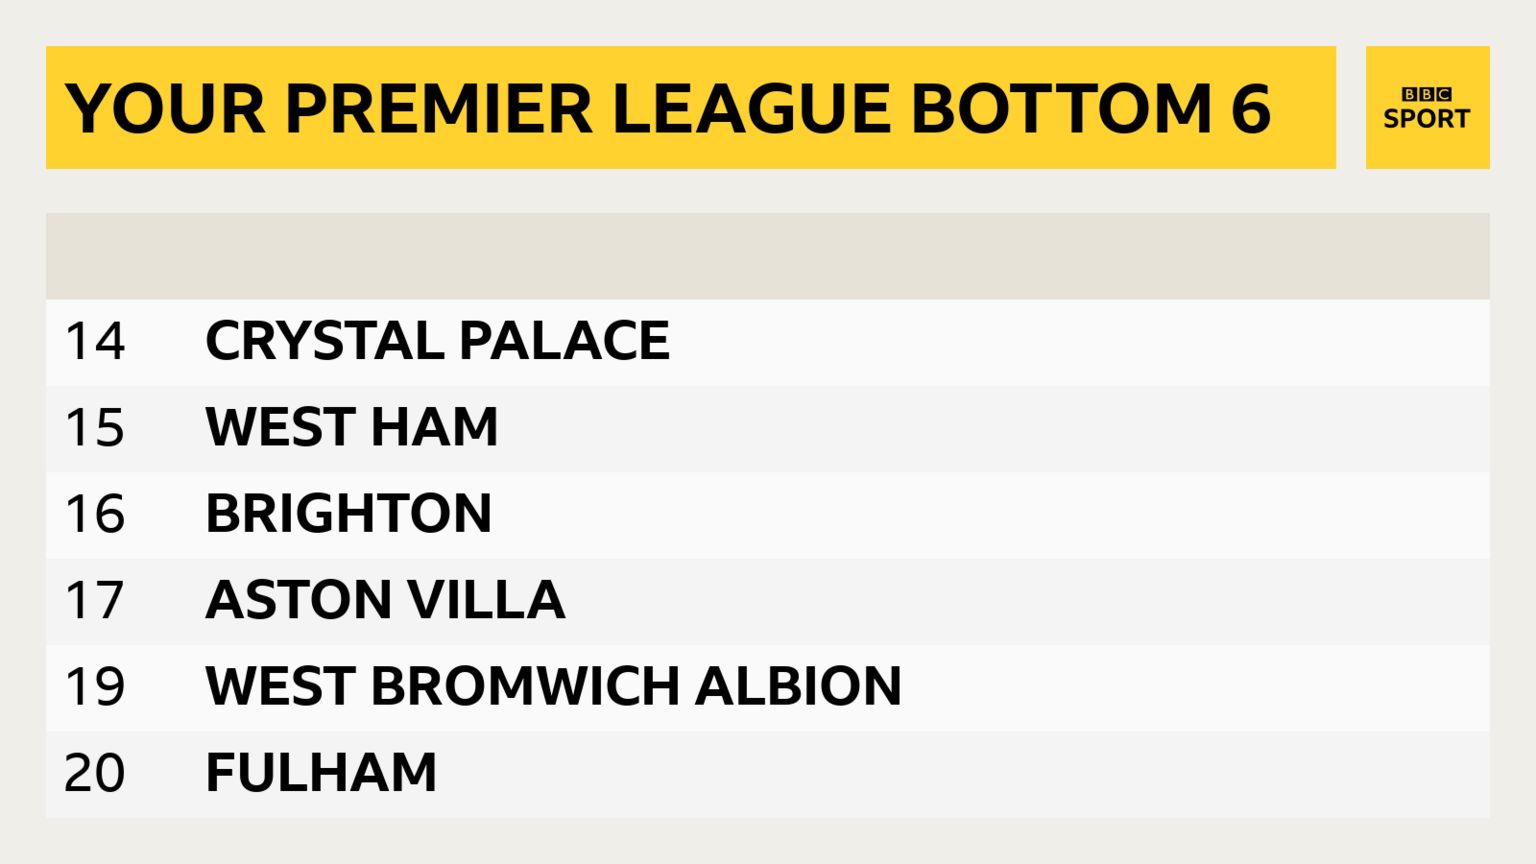 Your Premier League bottom 6